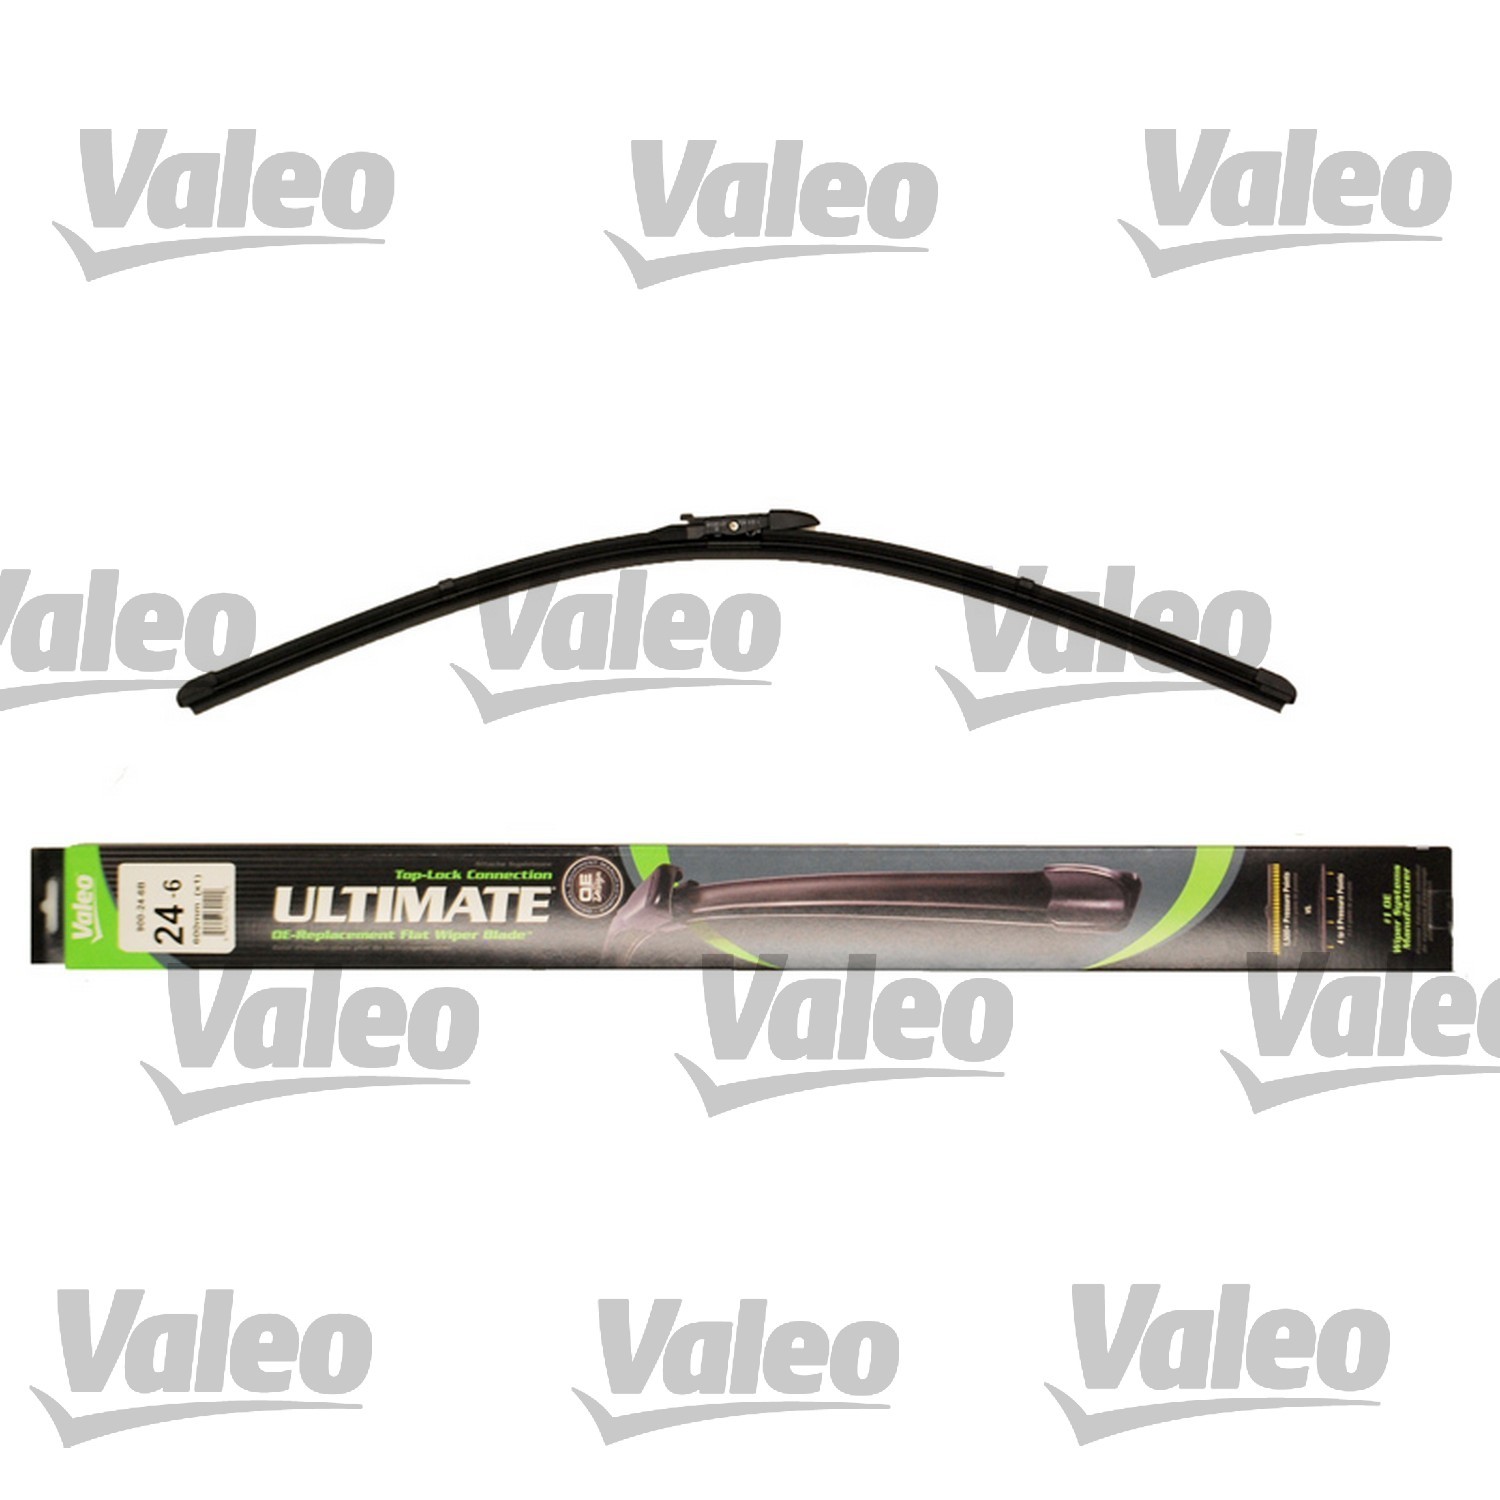 VALEO - Ultimate Wiper Blade Refill - VEO 900-24-6B